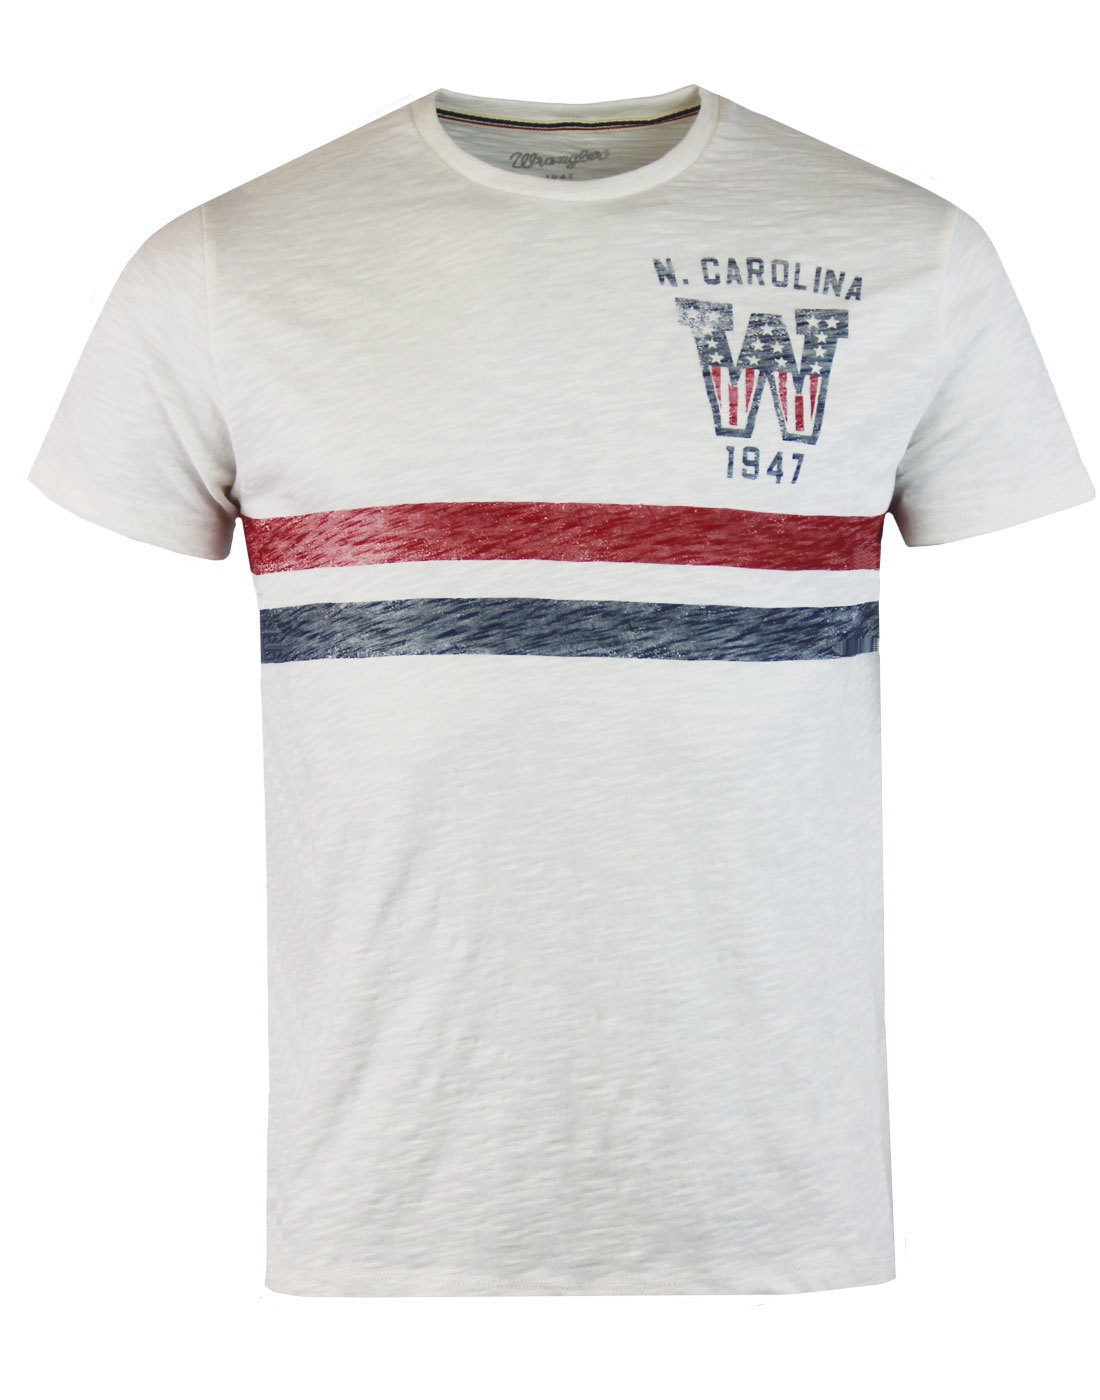 WRANGLER Retro 1970s Chest Stripe Varsity T-shirt